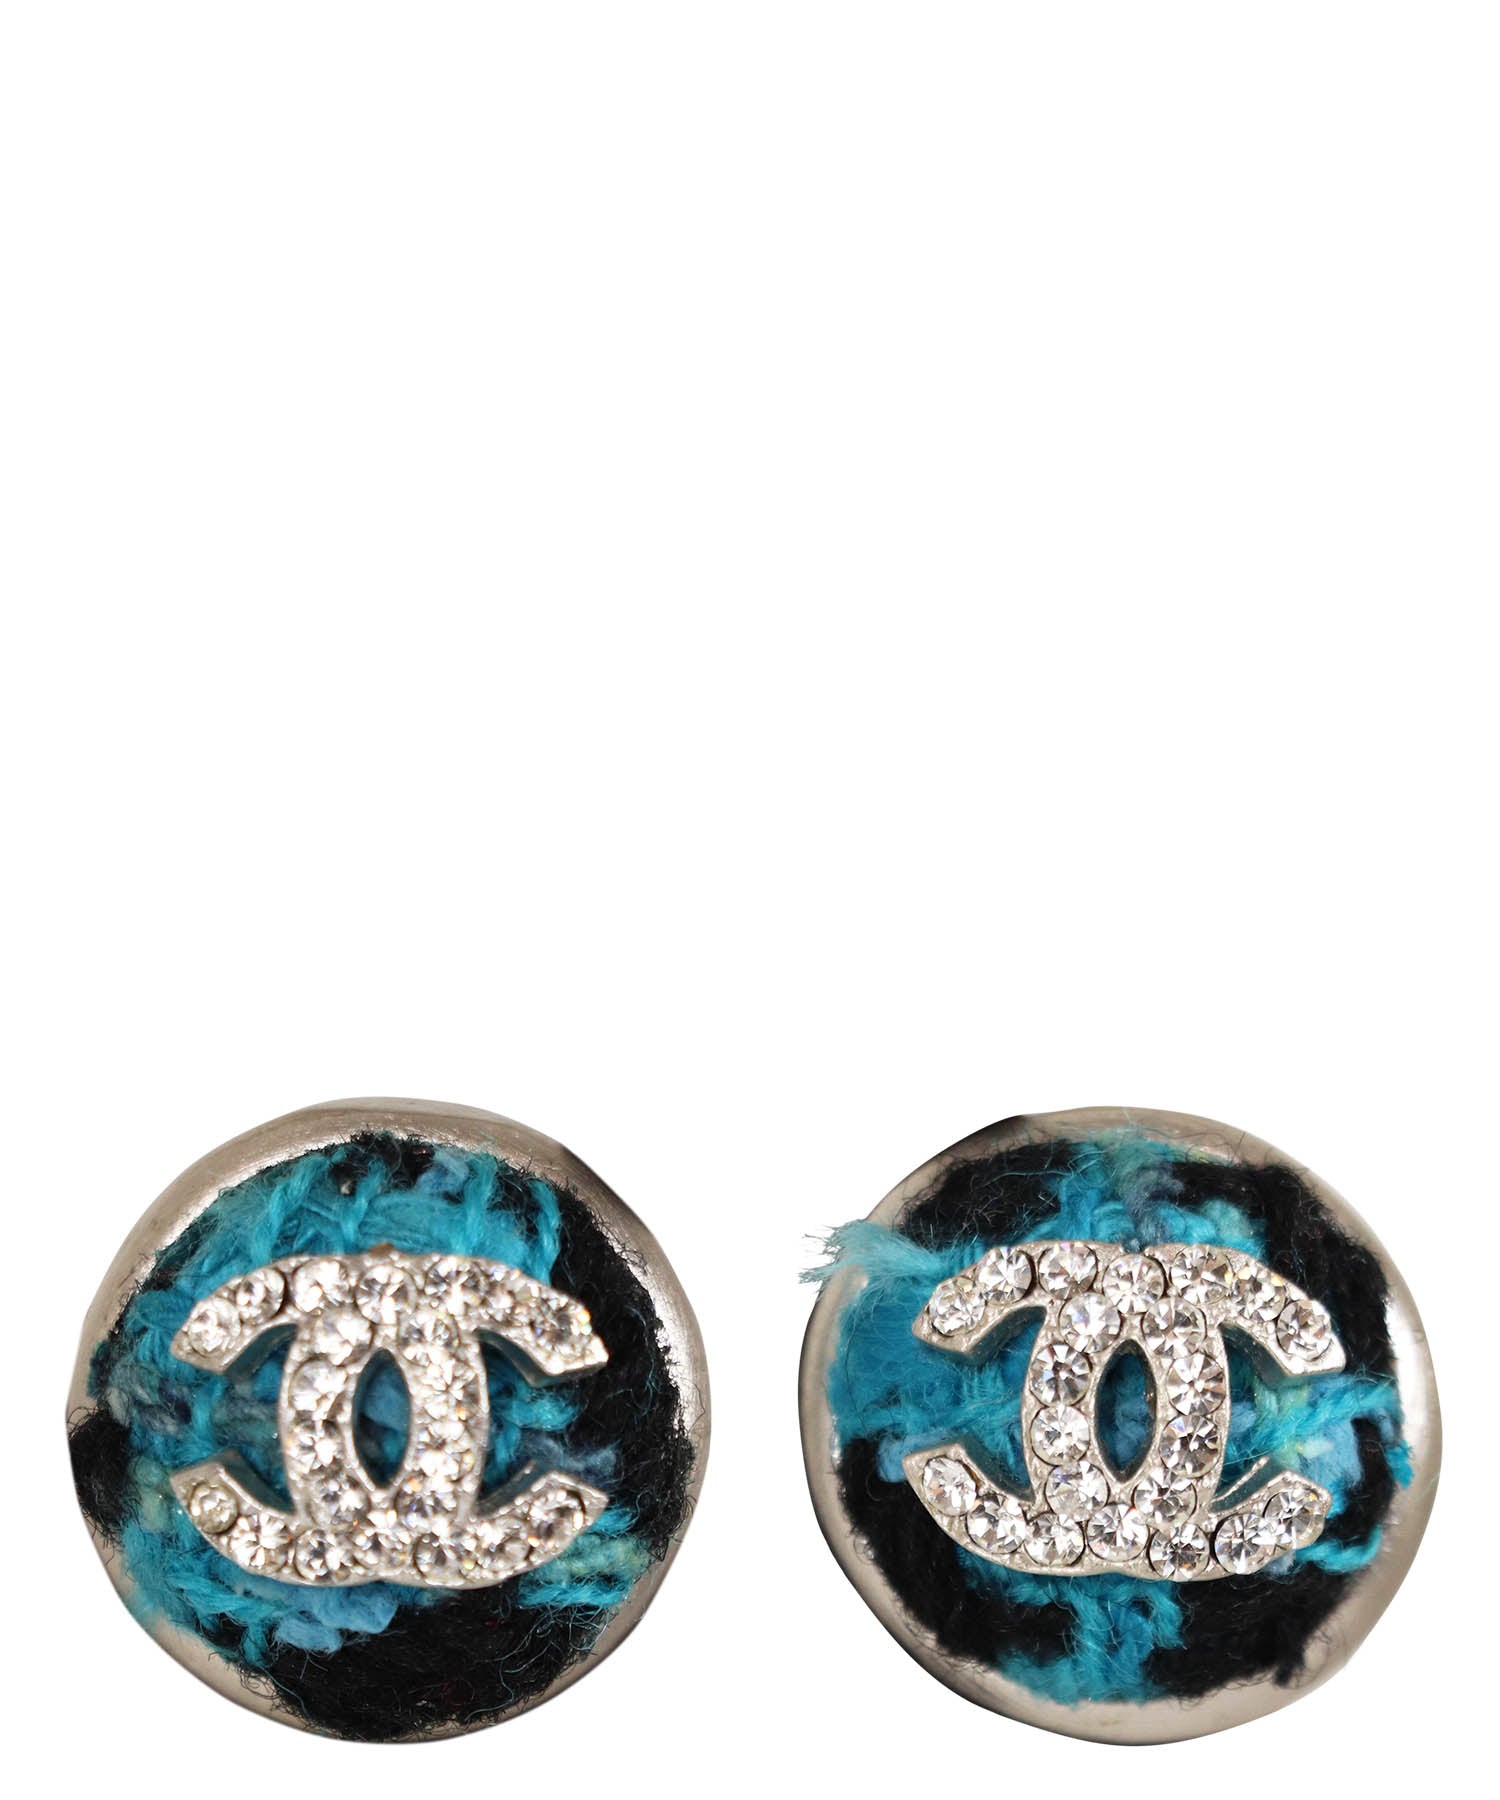 Chanel Vintage 1980s Lizard Pearl Drop Earrings